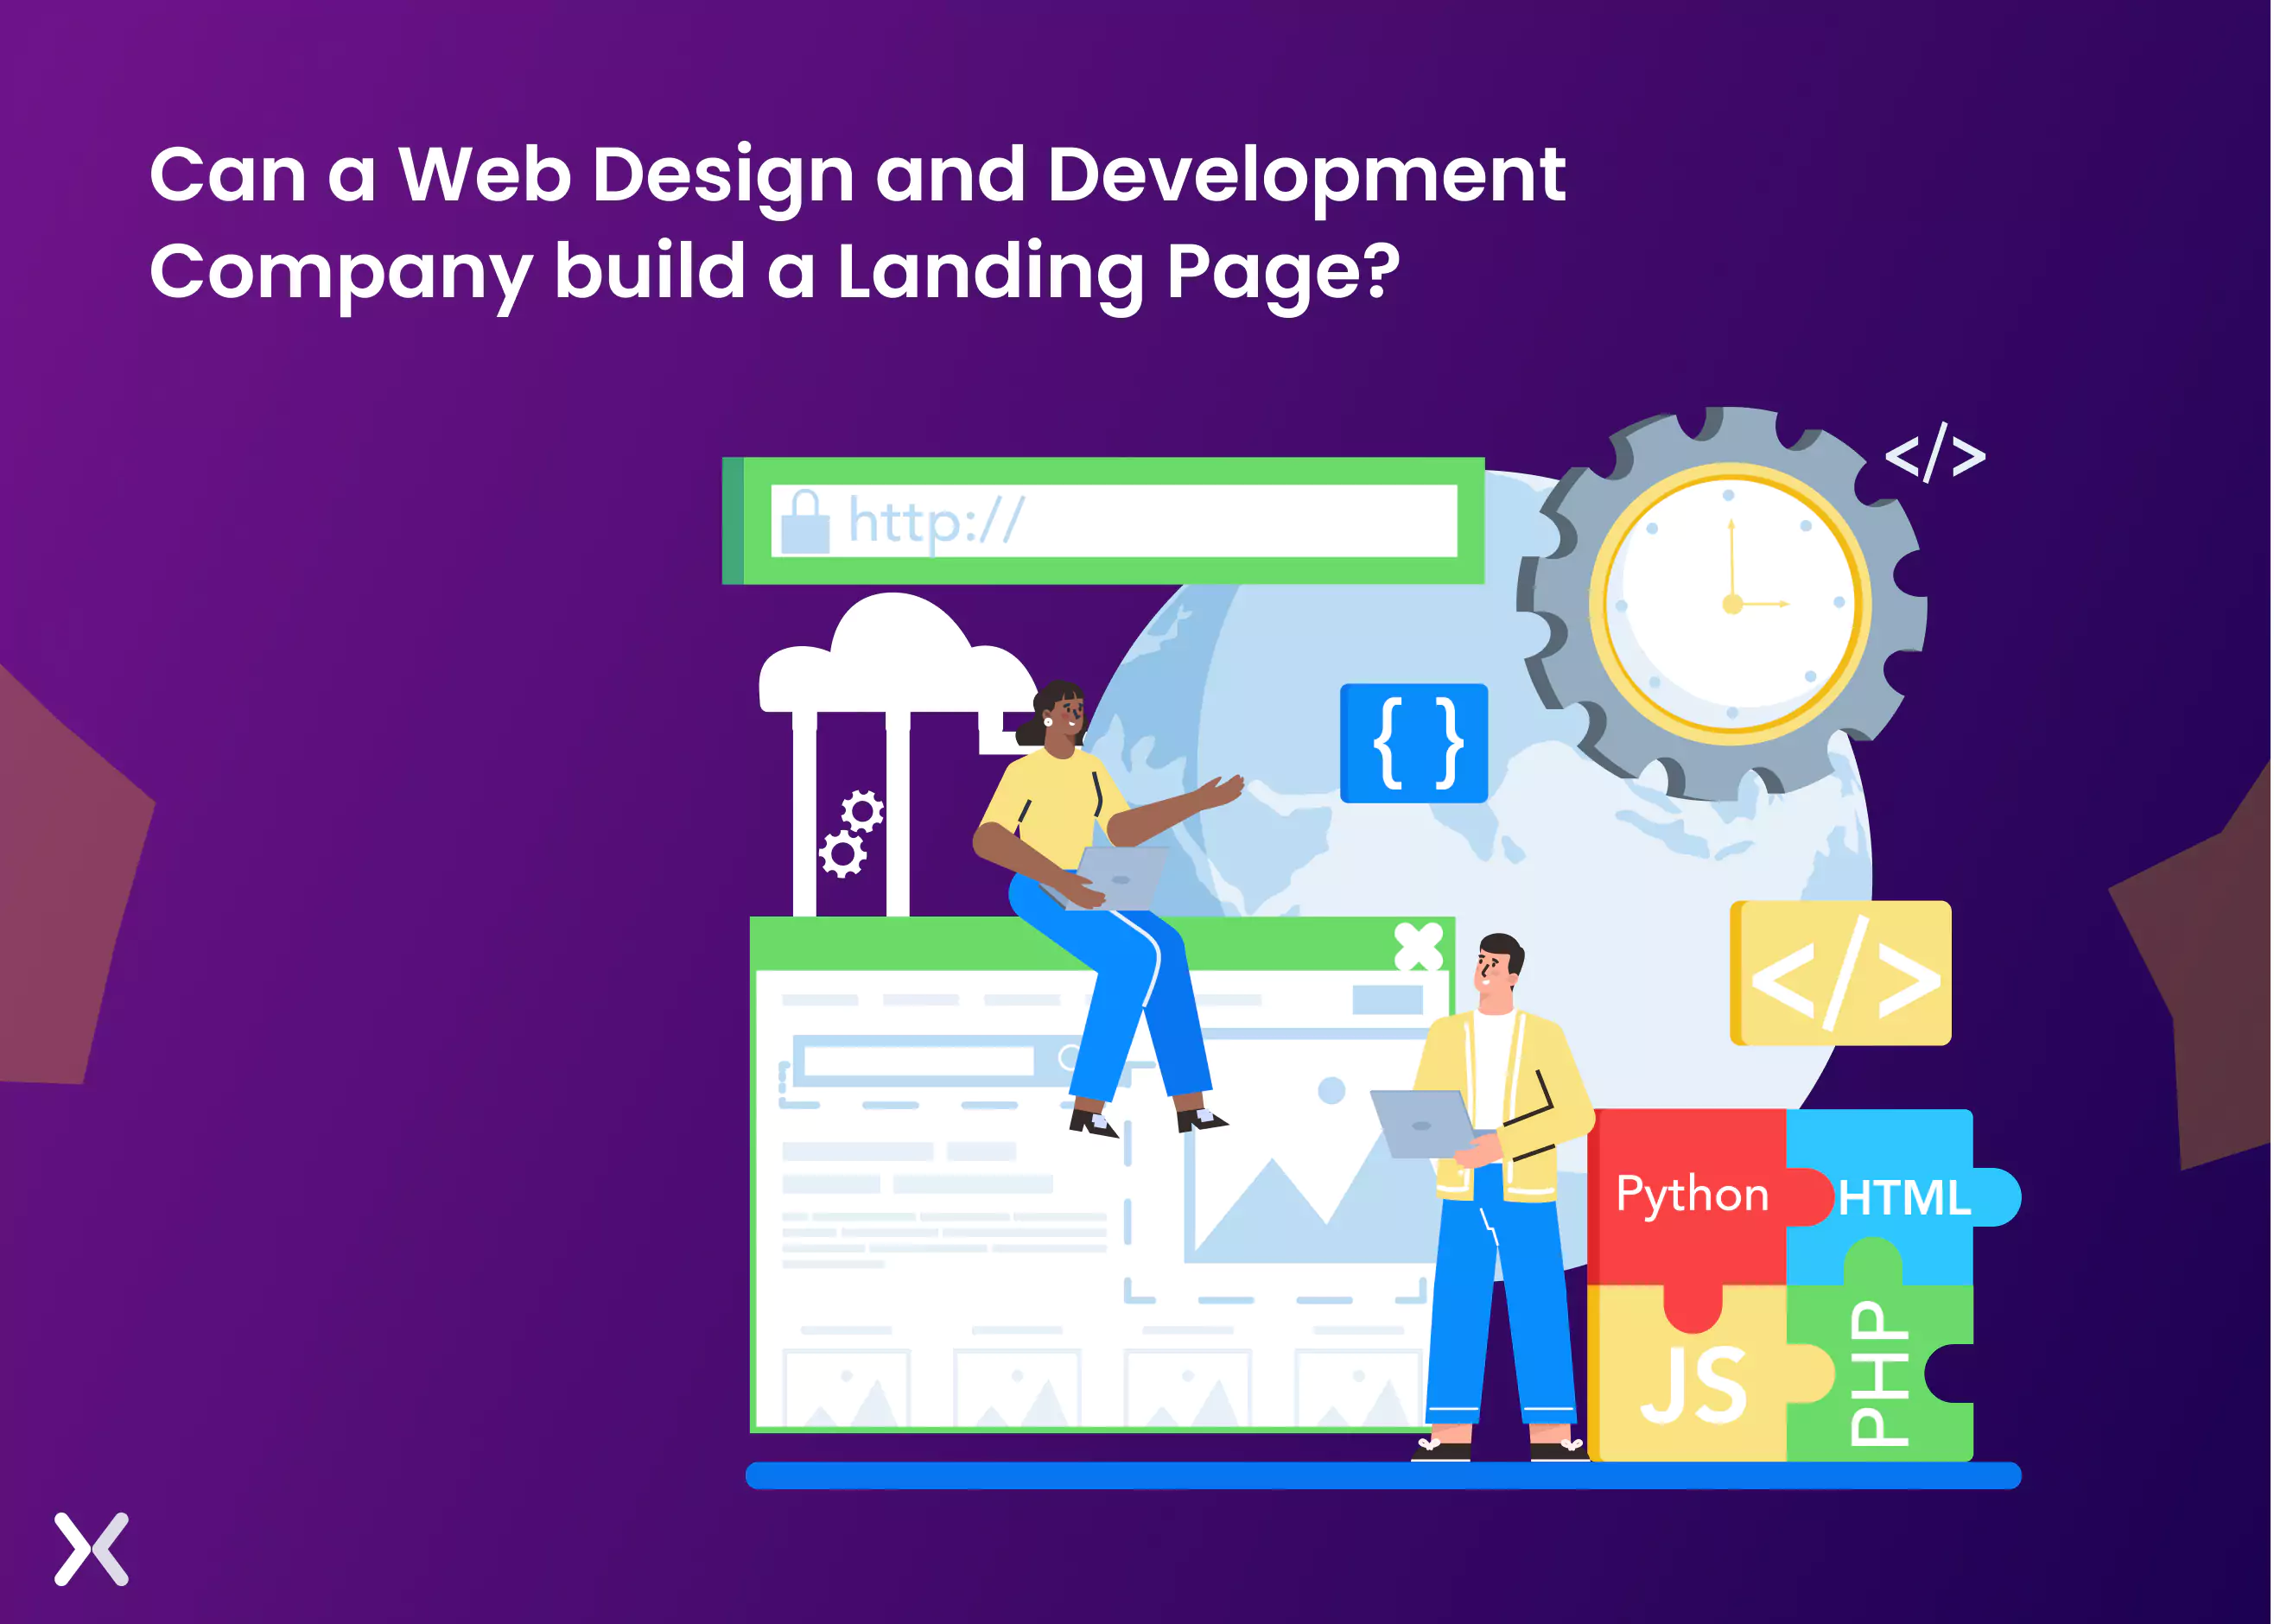 website-design-agency-for-building-landing-pages-fc8641.webp